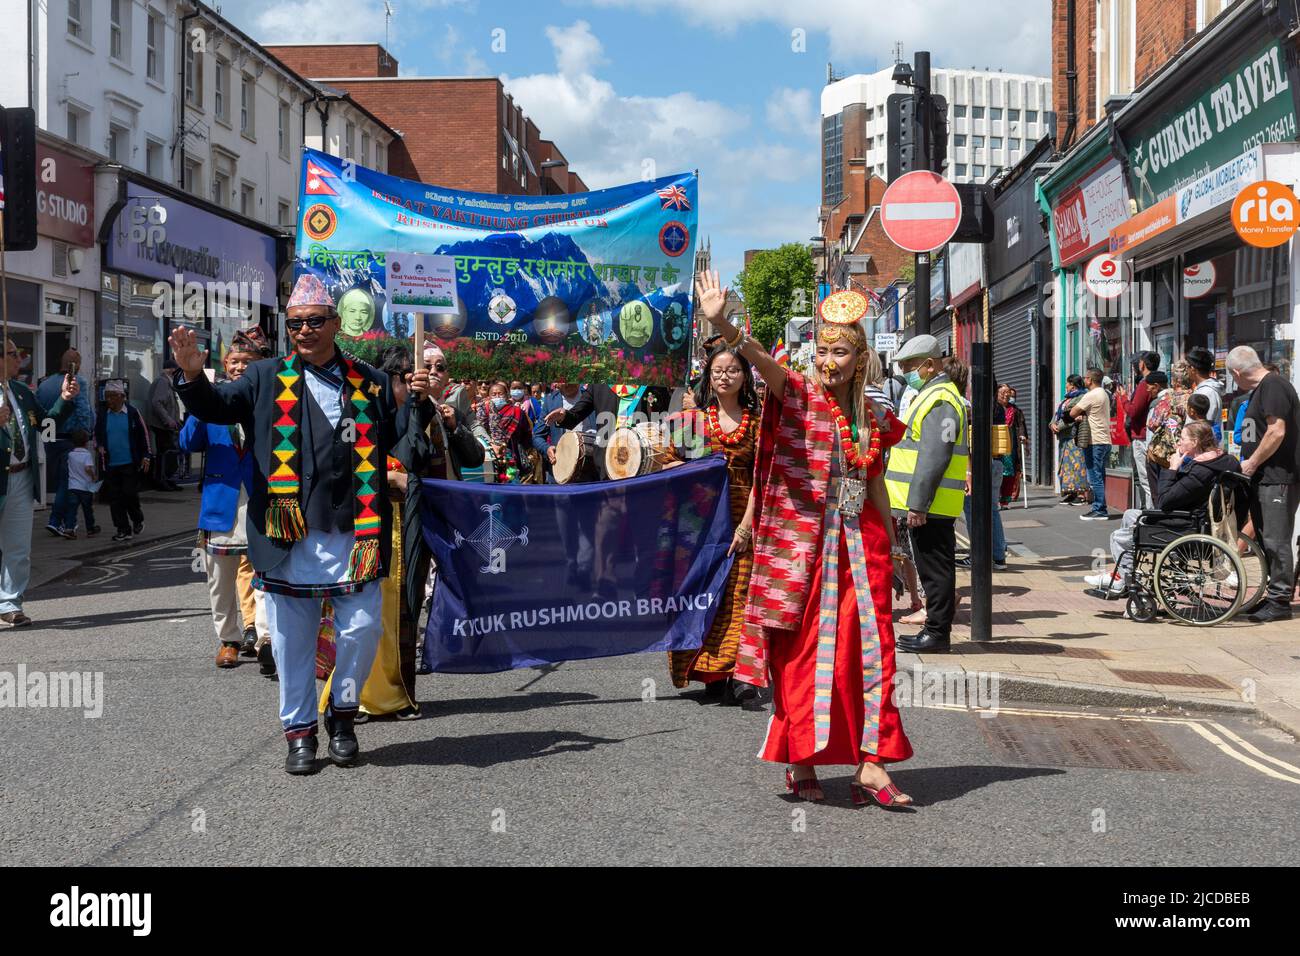 Kirat Yakthung Chumlung Royaume-Uni, peuple népalais de Limbu, dans le Grand Parade à Victoria Day, un événement annuel à Aldershot, Hampshire, Angleterre, Royaume-Uni Banque D'Images